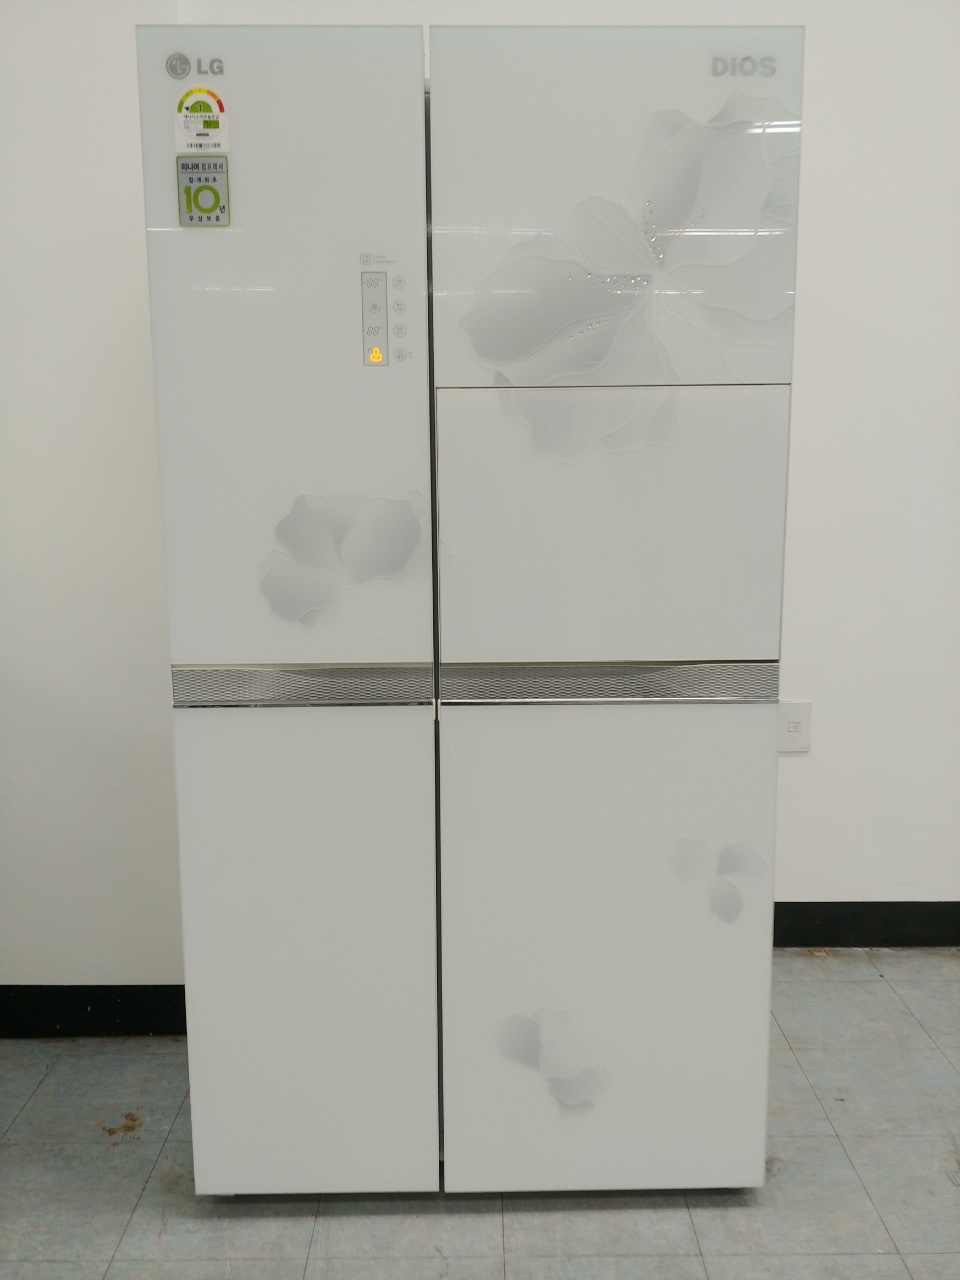 중고양문형냉장고 LG전자 디오스 751리터 2011년 하남 081202